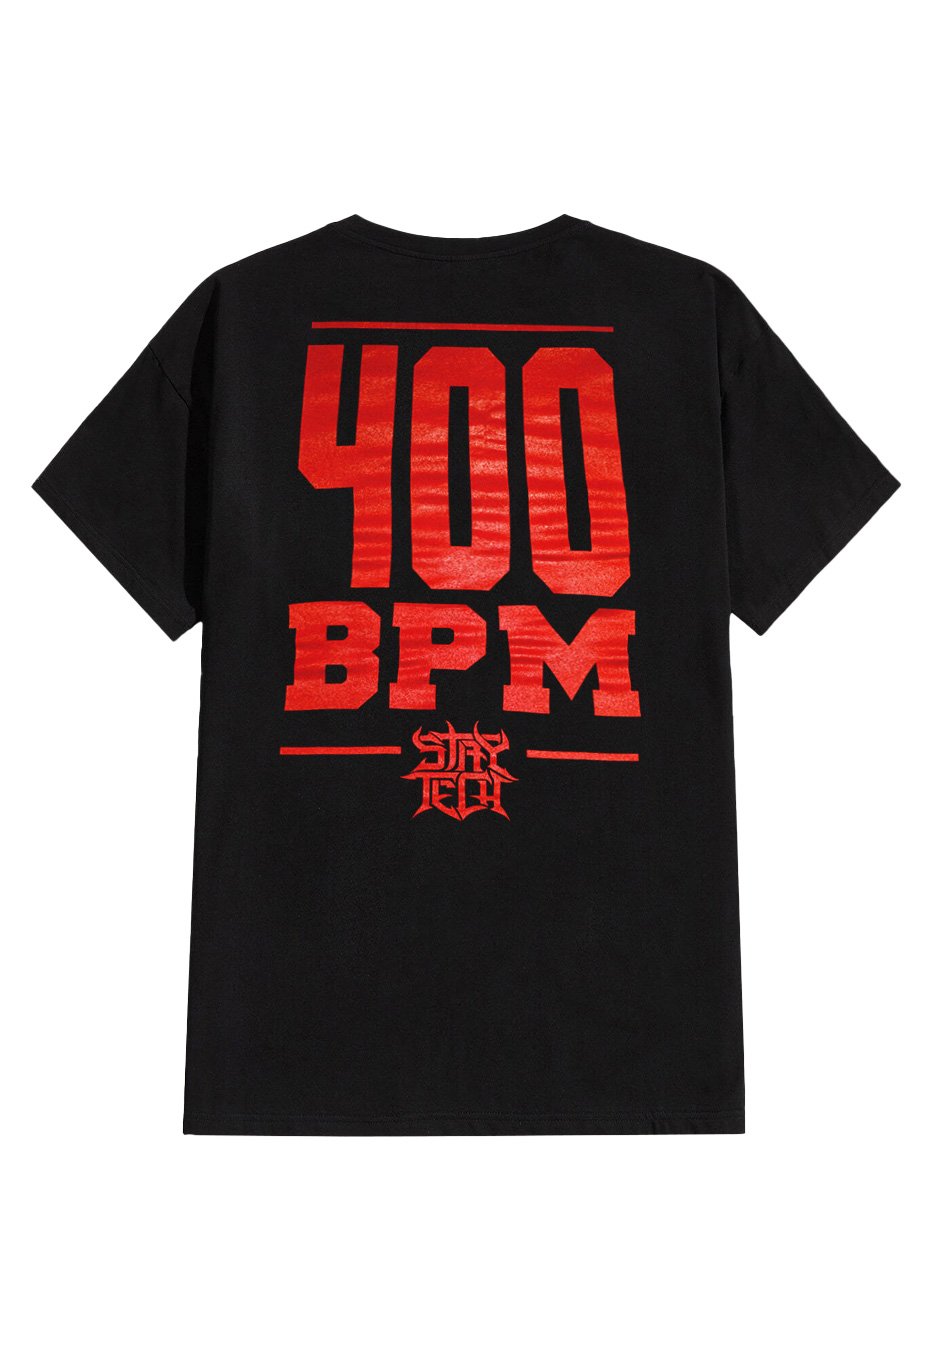 Archspire - Mind Blow 400 BPM - T-Shirt | Neutral-Image